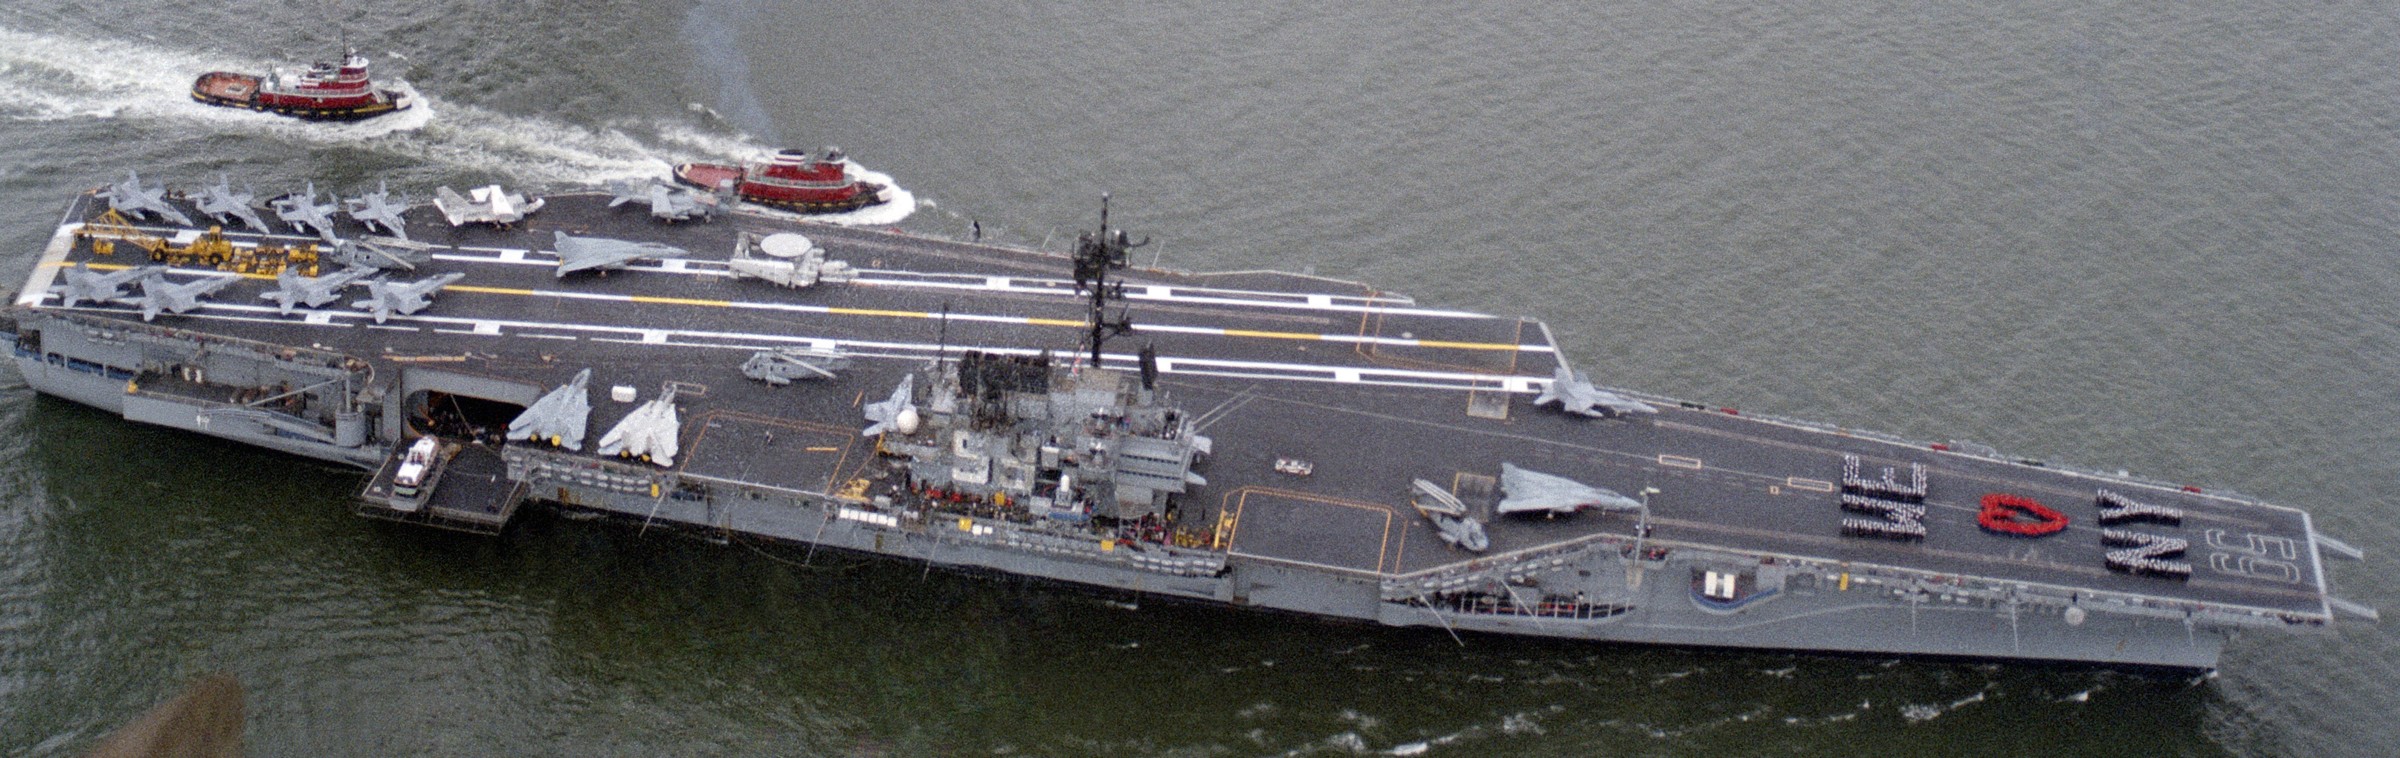 cv-59 uss forrestal aircraft carrier us navy fleet week new york 1989 97